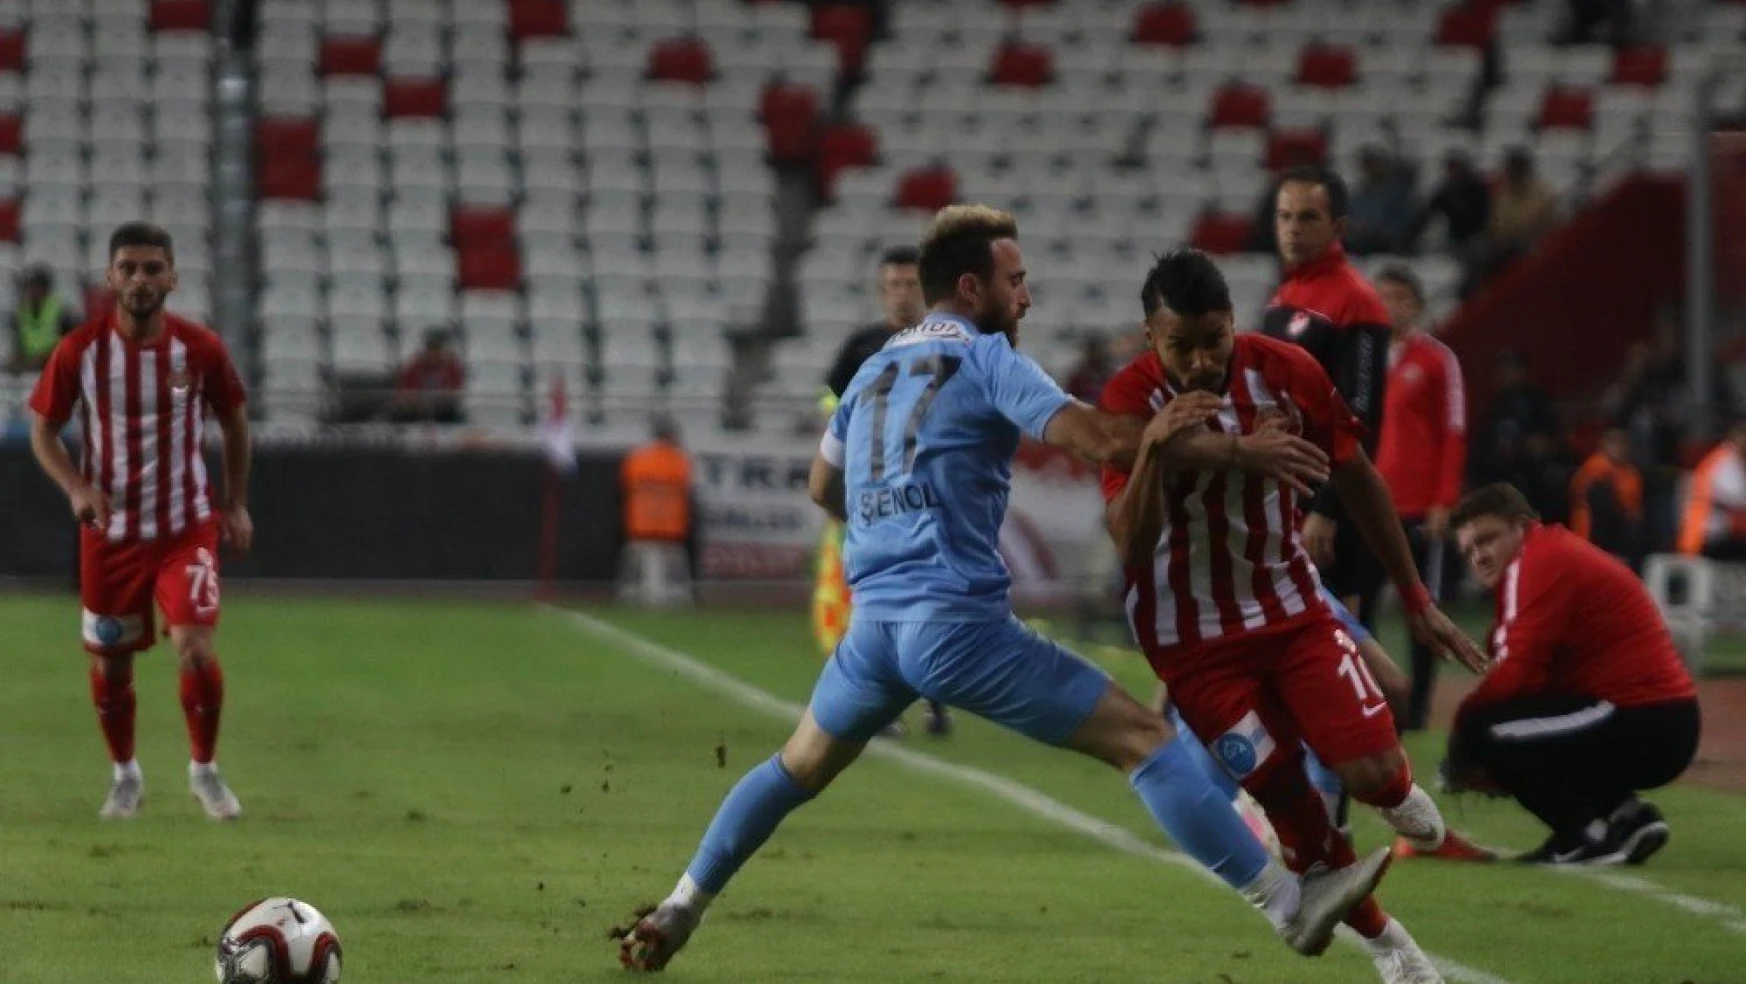 Ziraat Türkiye Kupası 4. tur: Antalyaspor: 1 - Yomraspor: 1